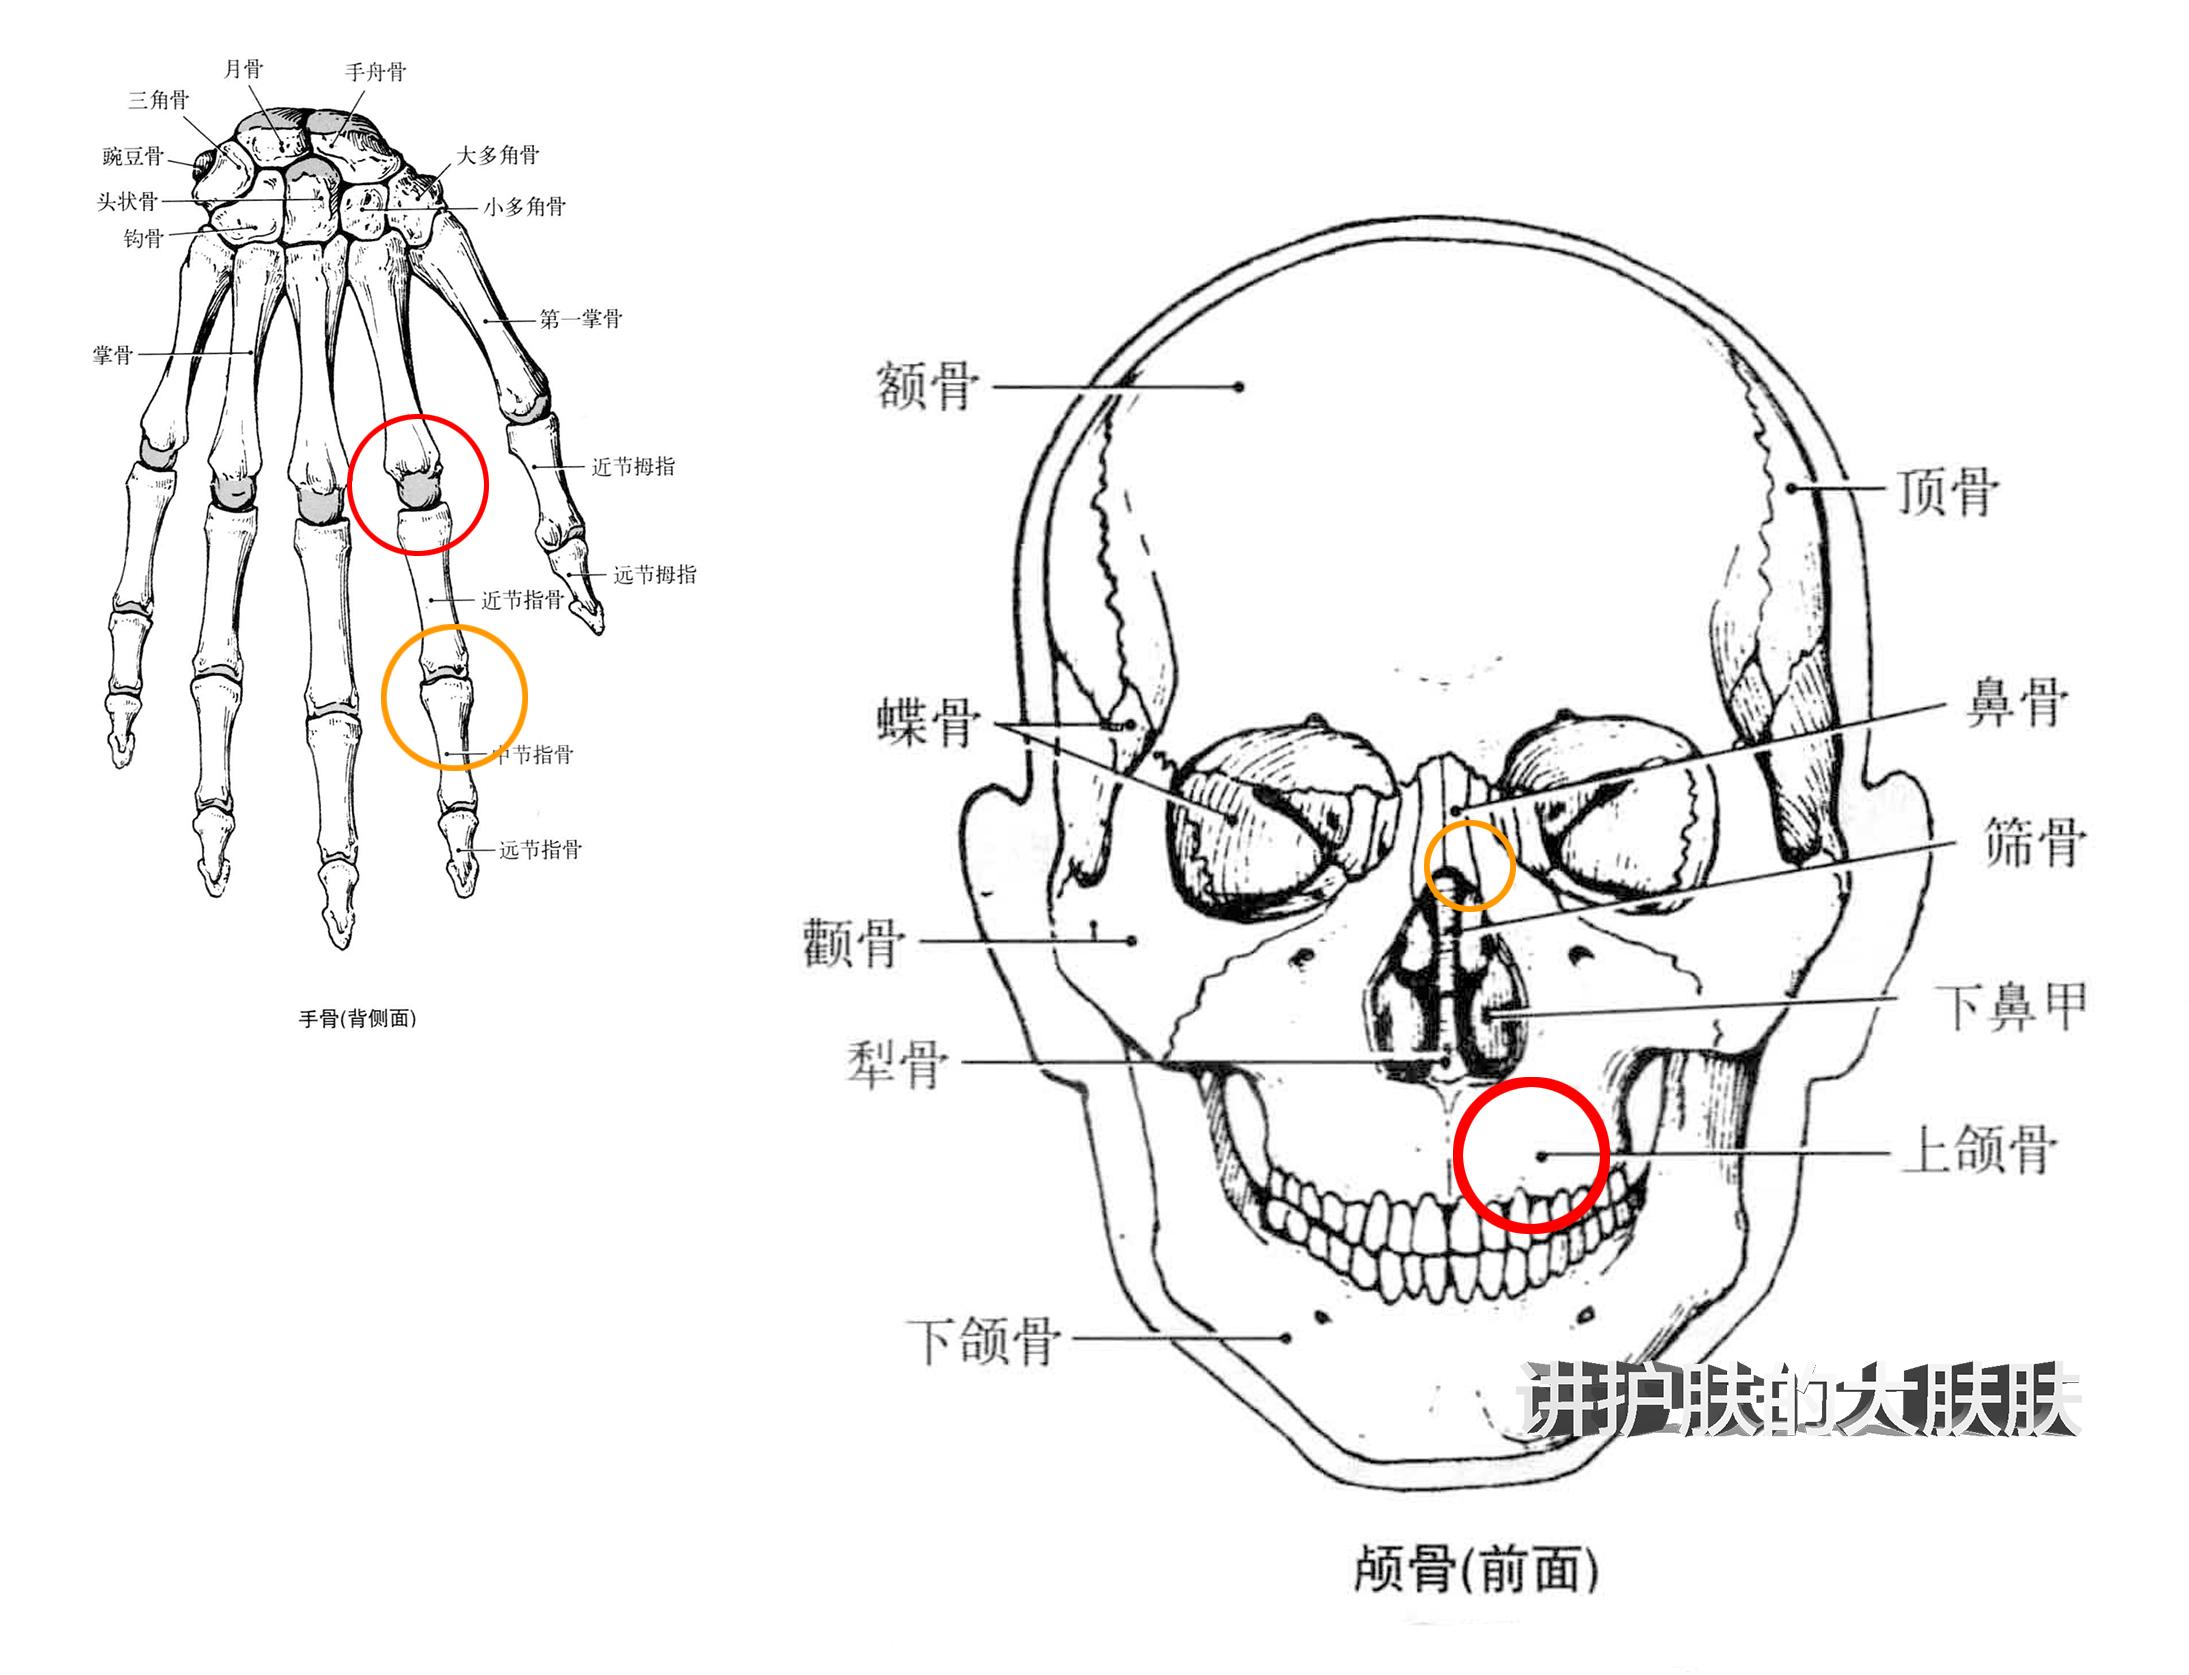 图2-1-8 鼻咽正中矢状切面-基础医学-医学